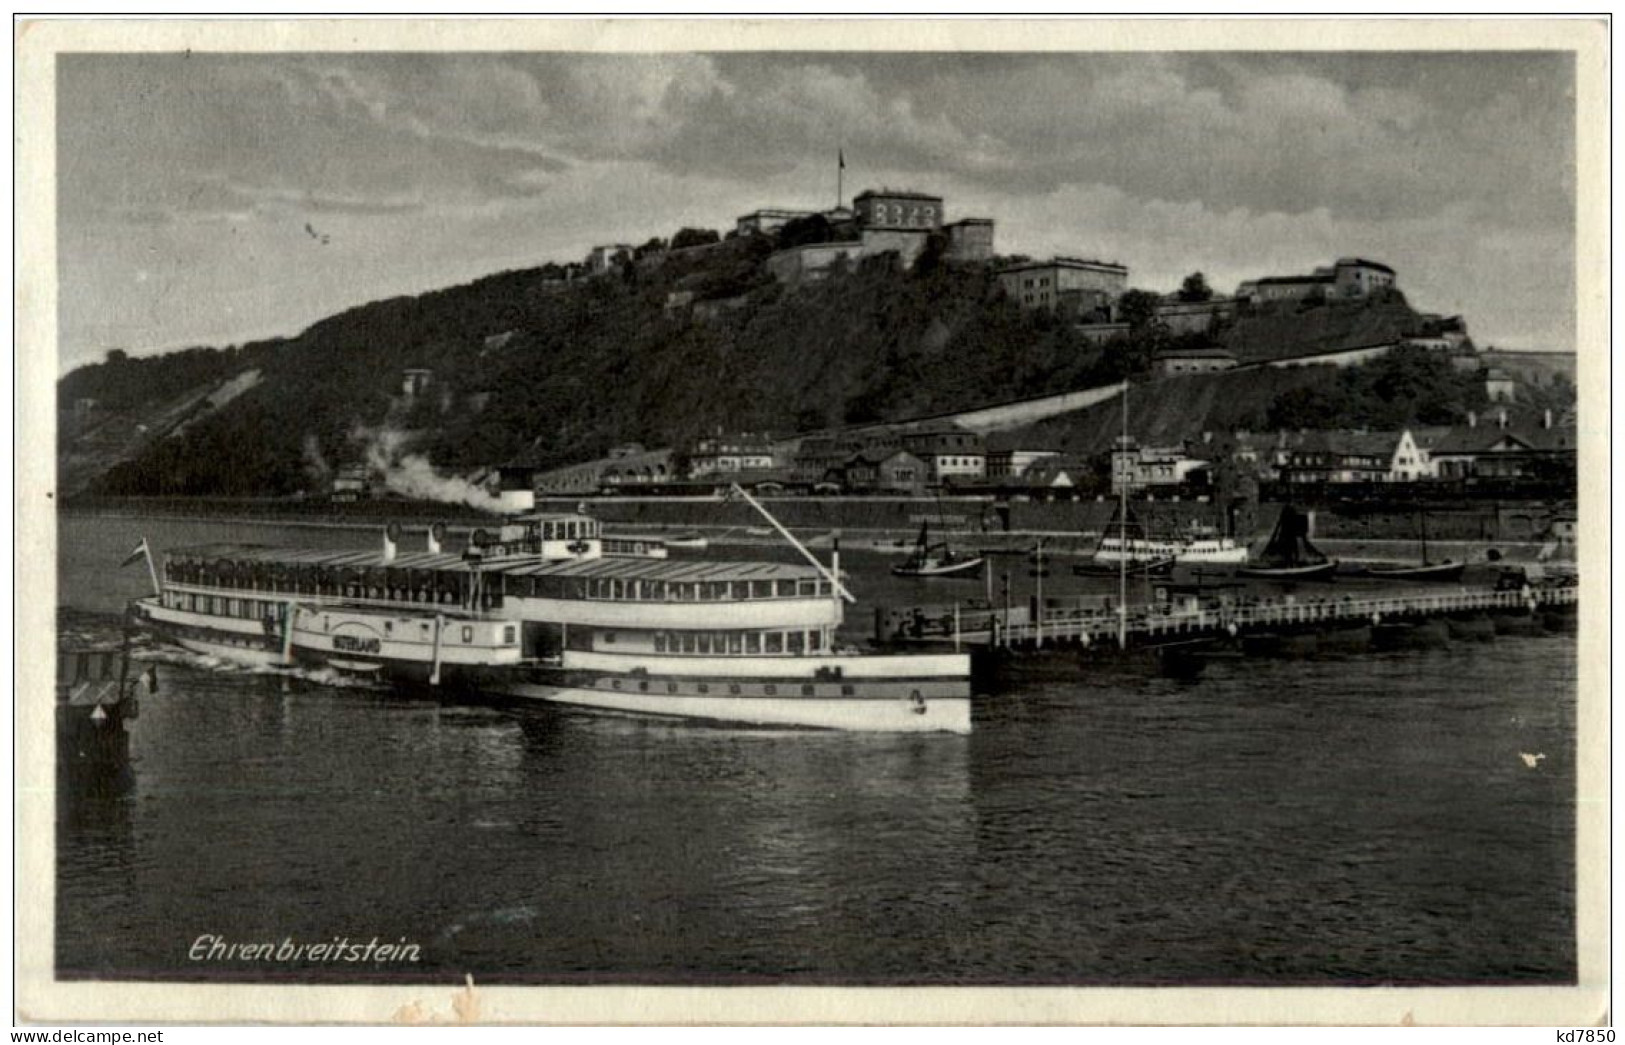 Ehrenbreitstein - Koblenz